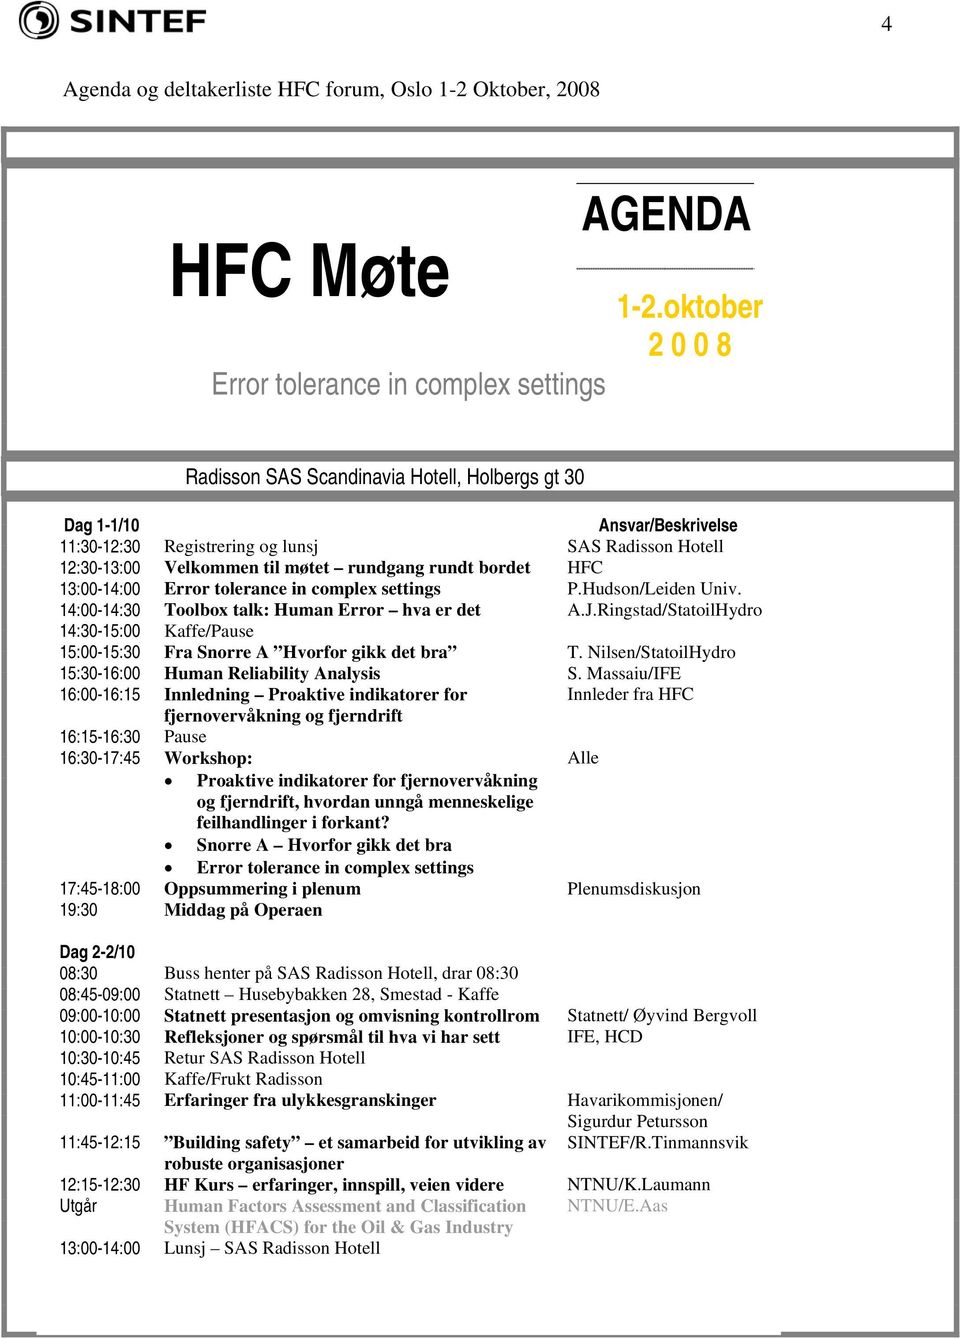 bordet HFC 13:00-14:00 Error tolerance in complex settings P.Hudson/Leiden Univ. 14:00-14:30 Toolbox talk: Human Error hva er det A.J.